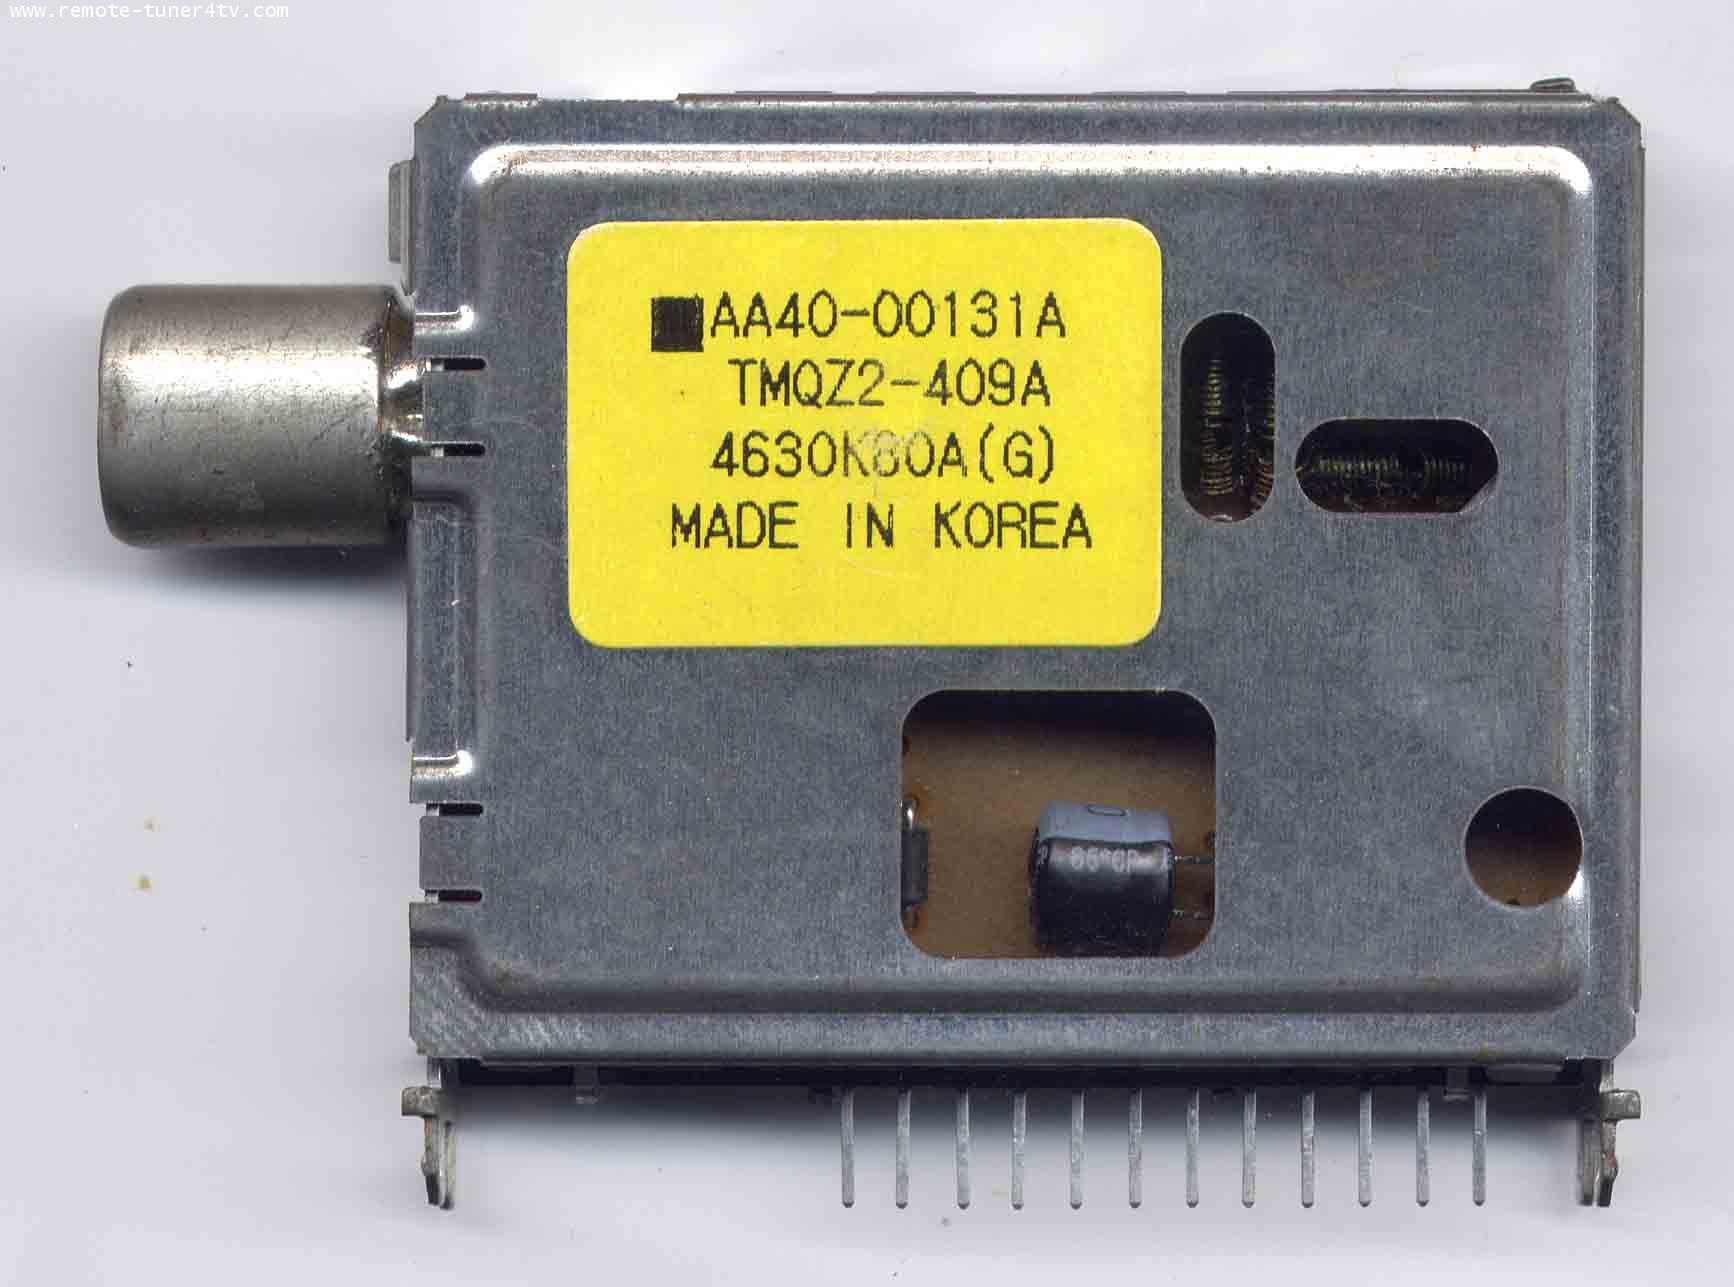 AA40-00131A(TMQZ2-409A)